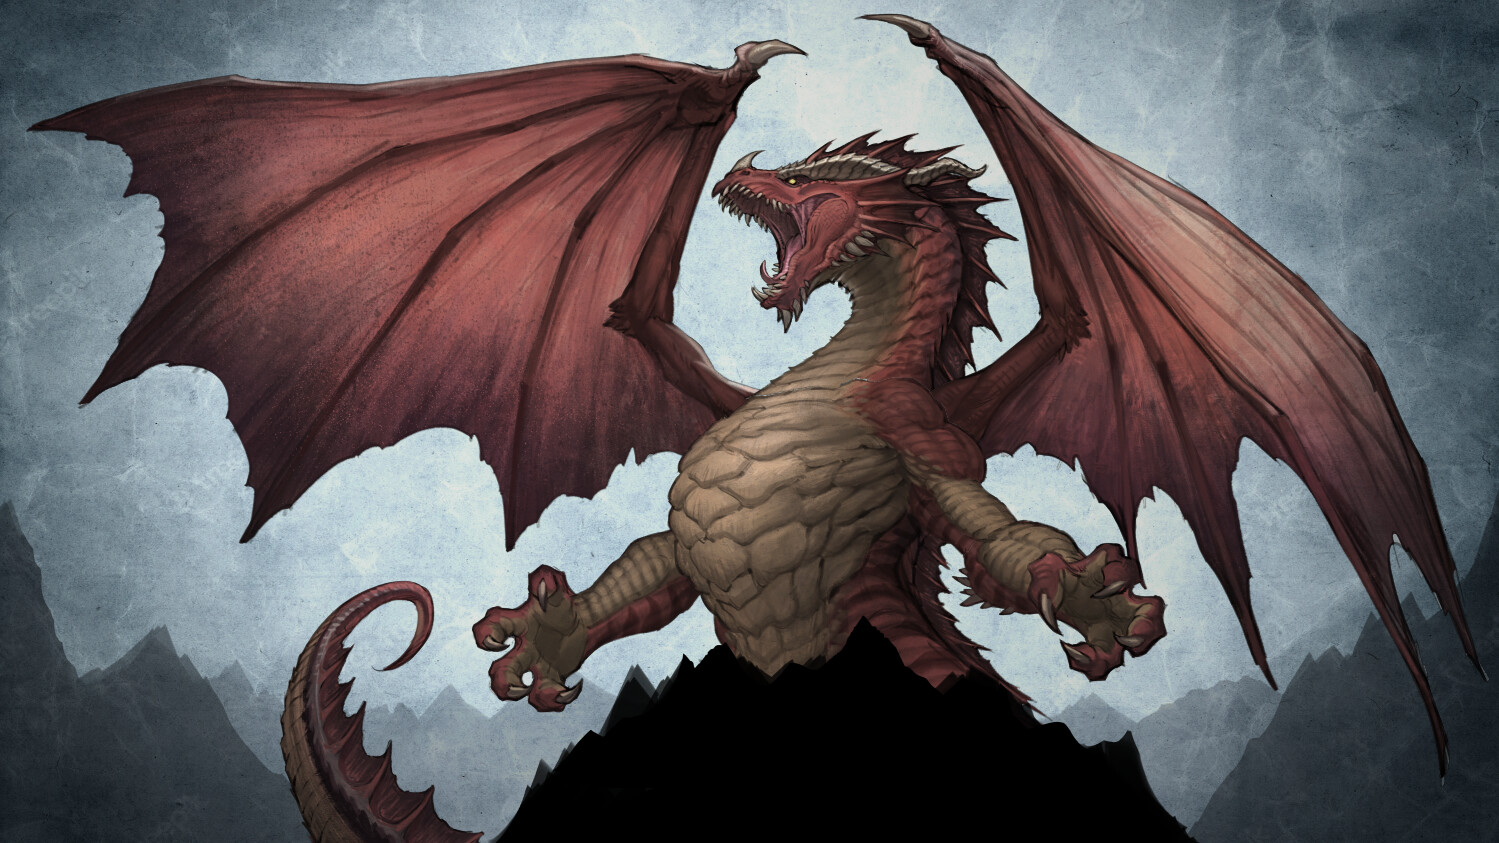 ArtStation - Red dragon